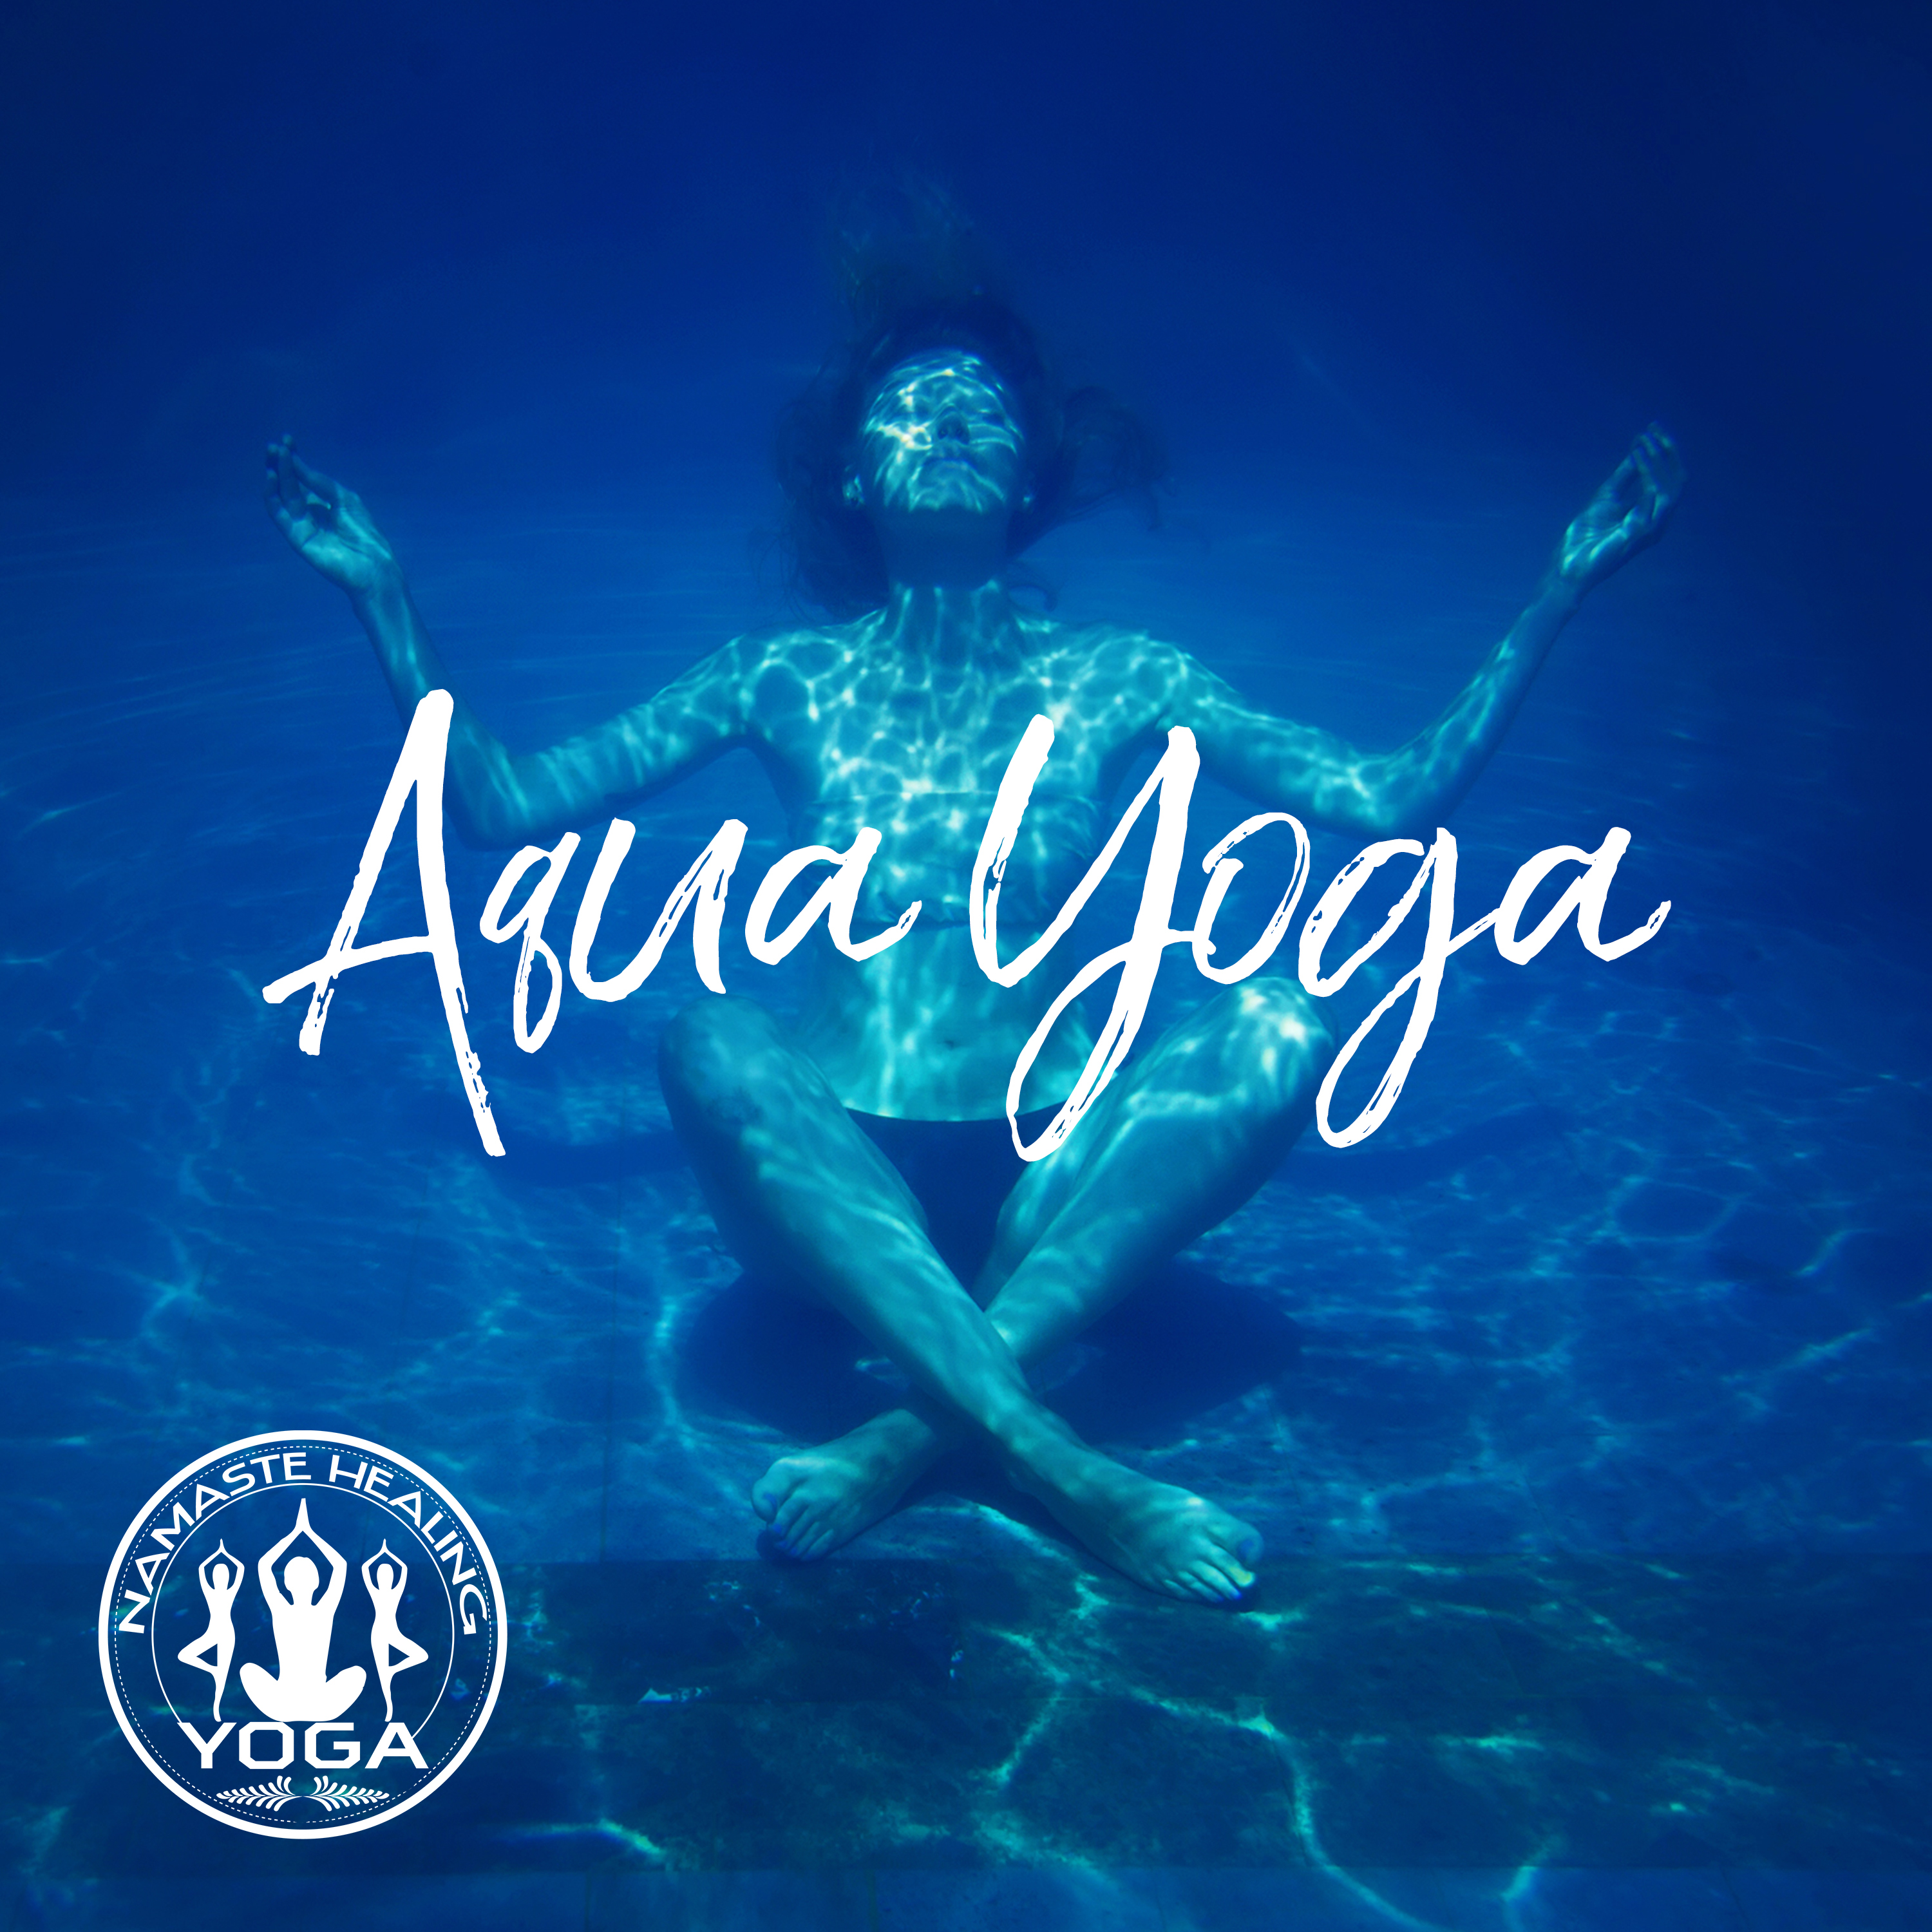 Aqua Exercises